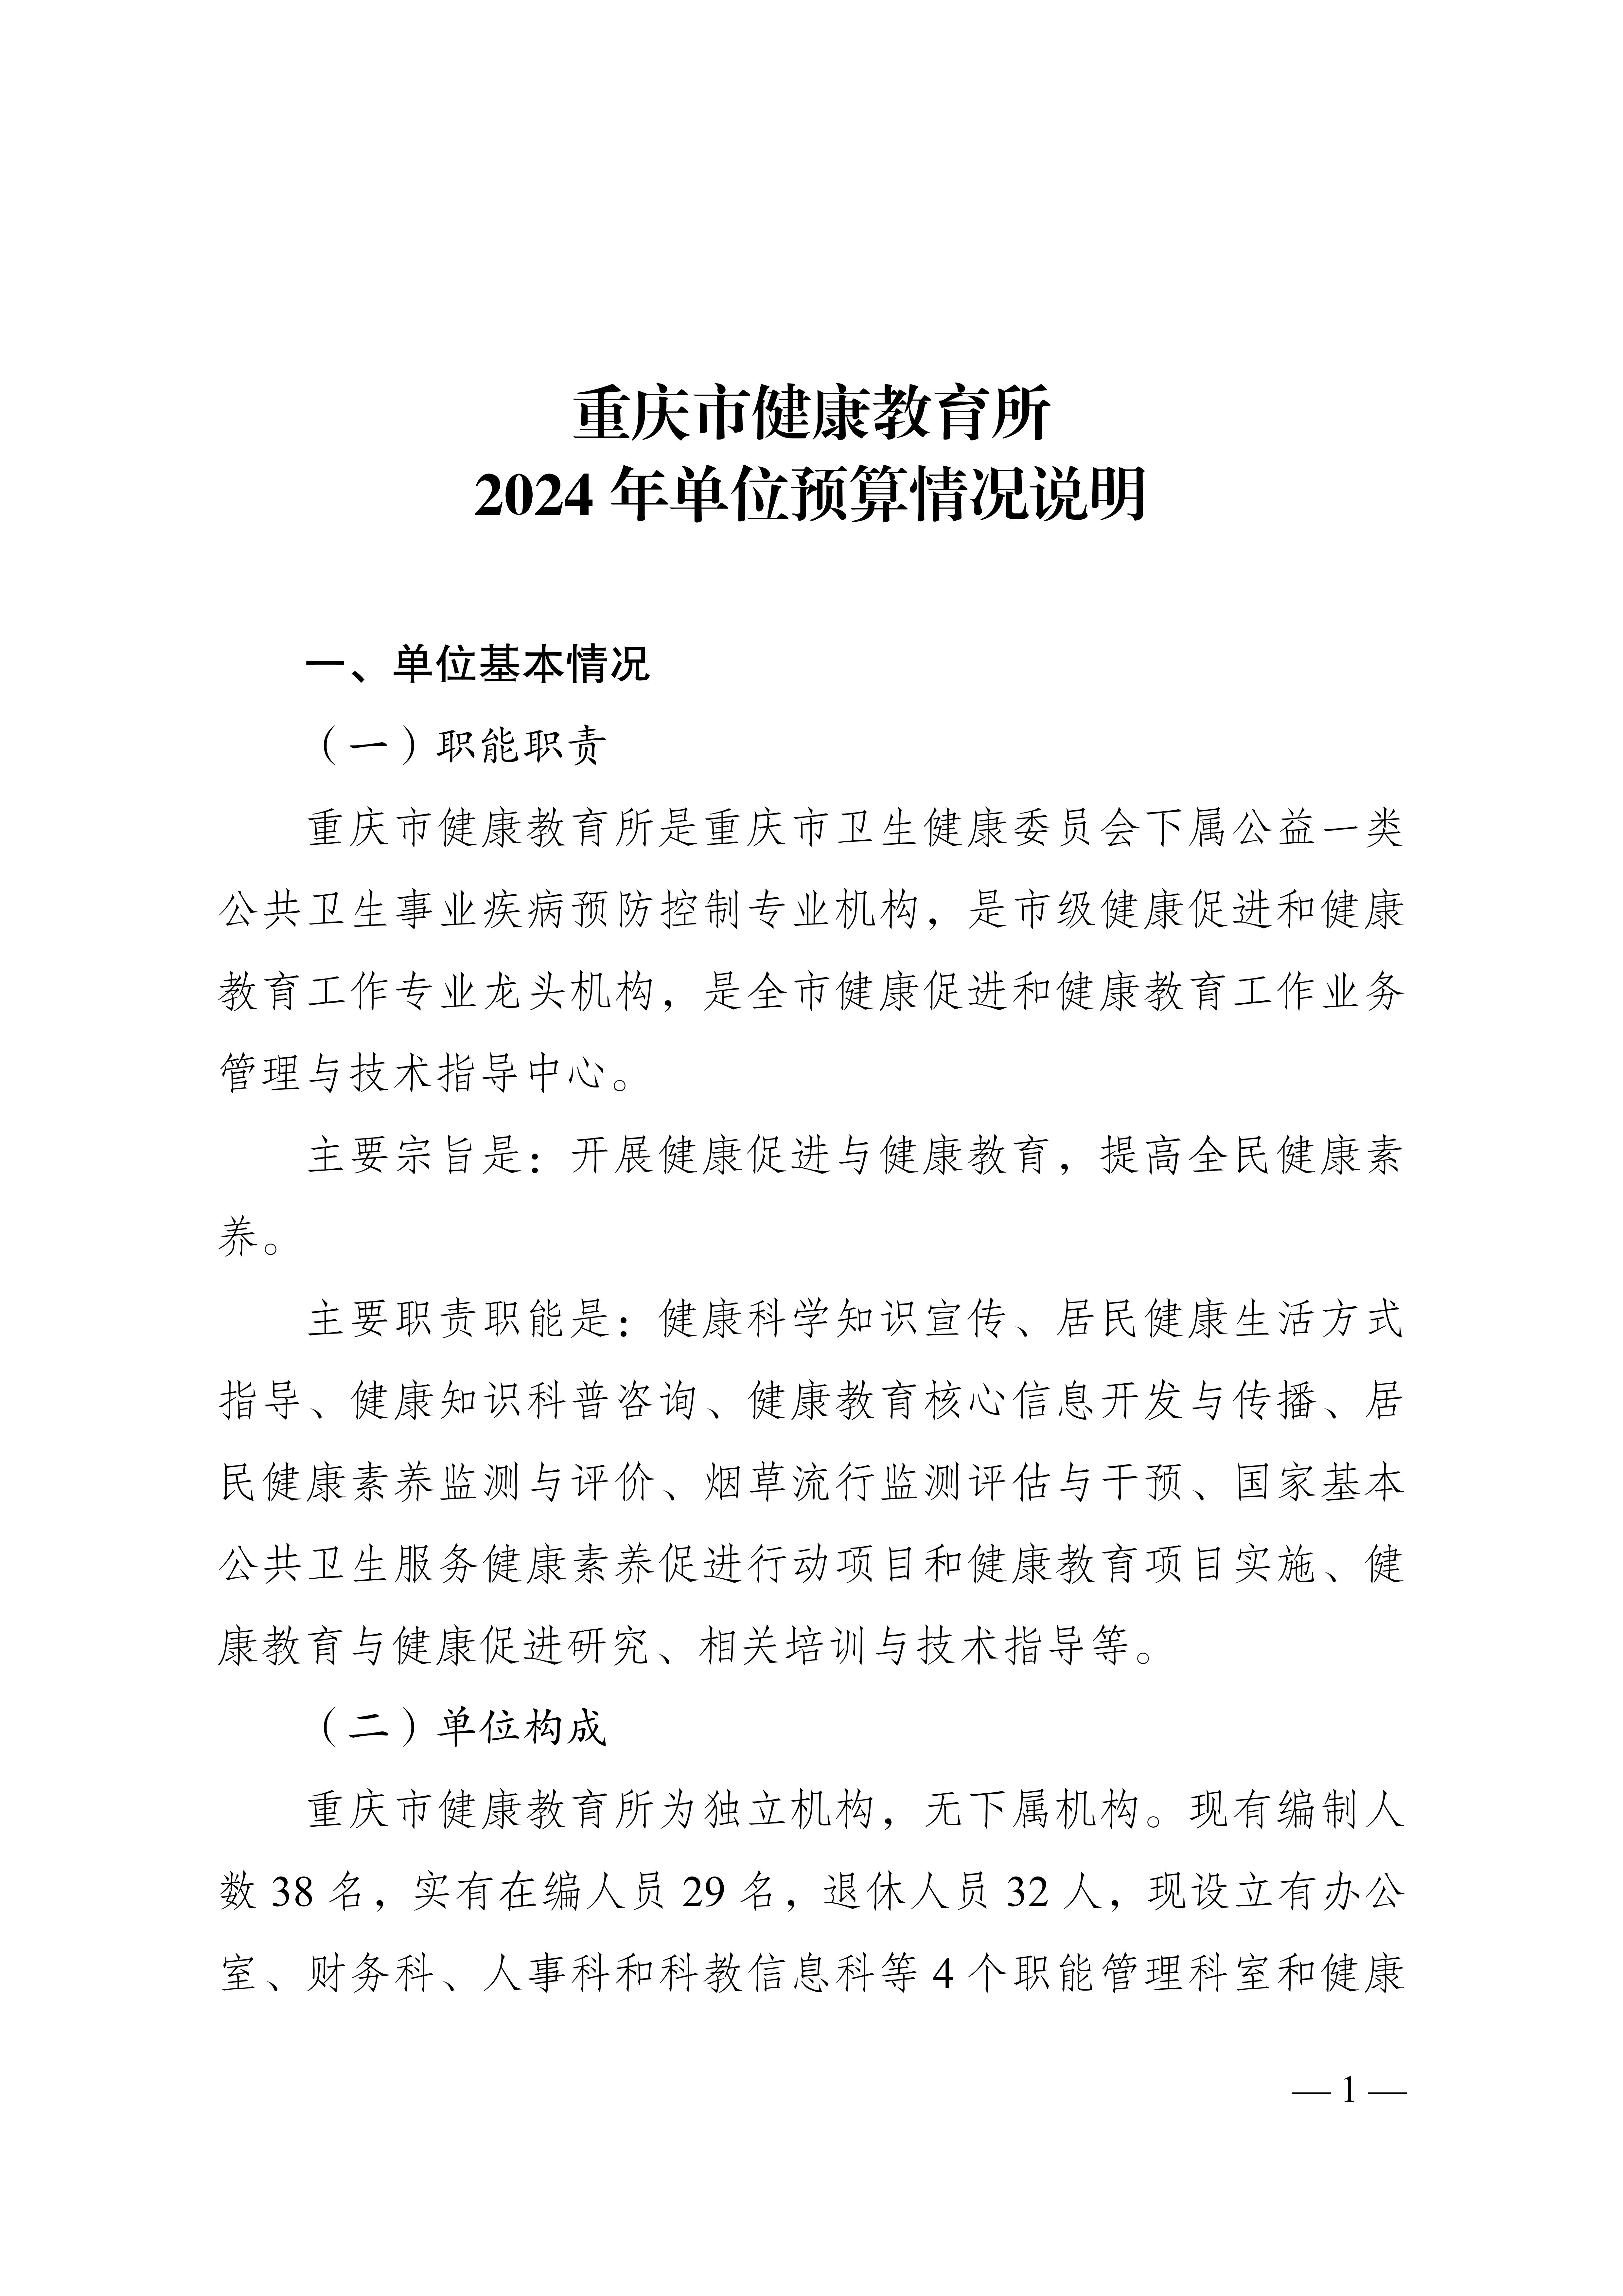 重庆市健康教育所2024年单位预算情况说明_1.jpg